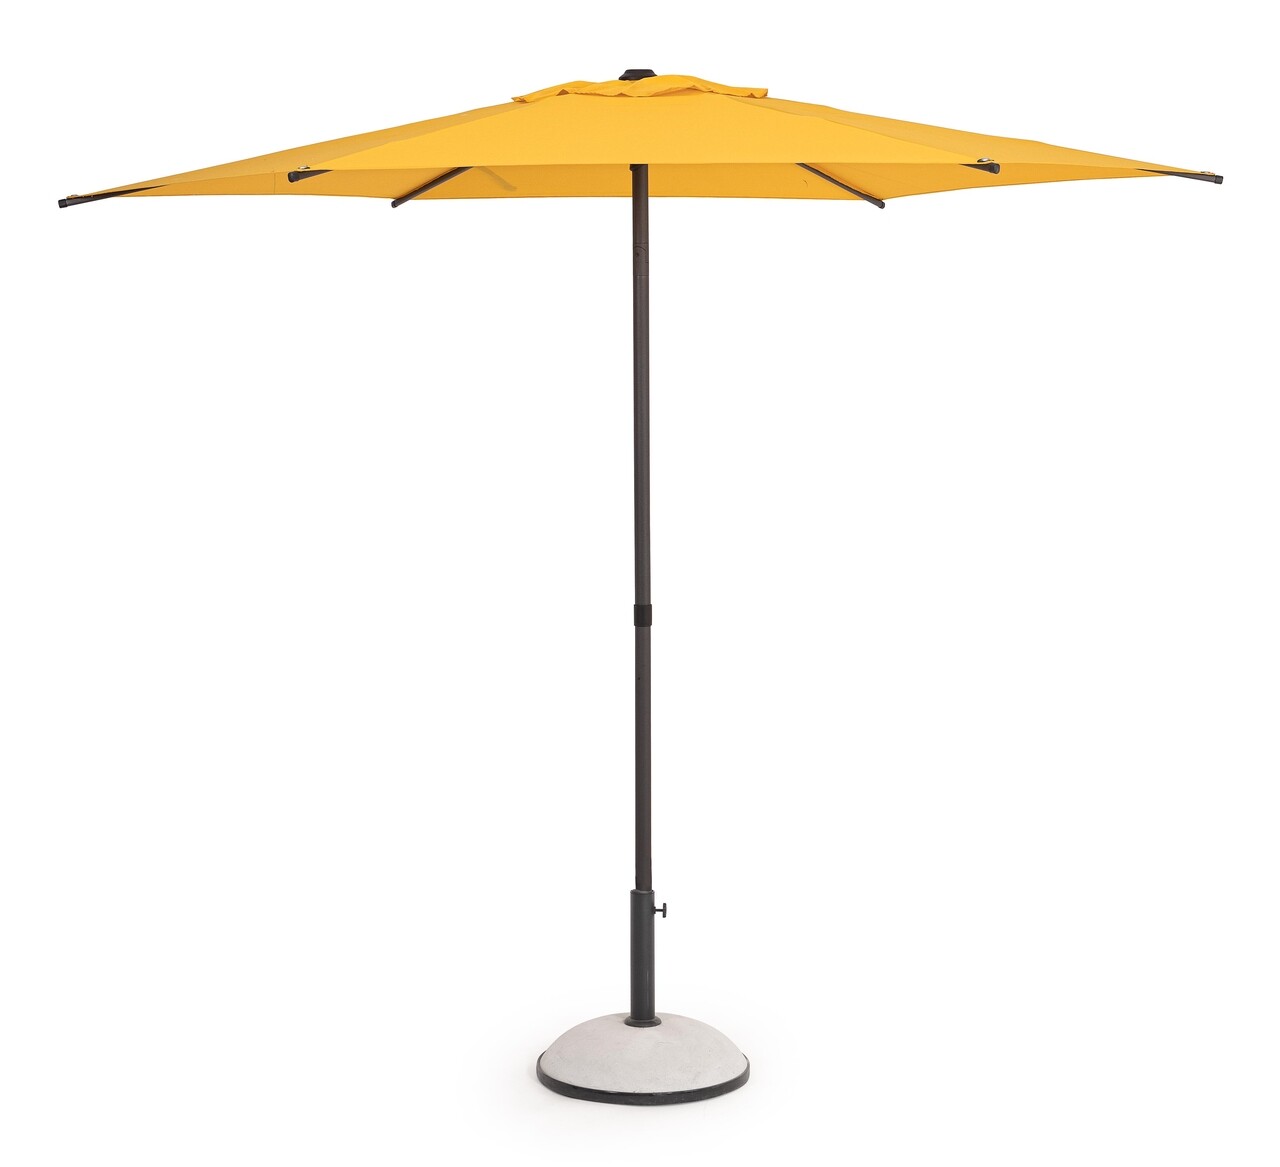 Samba Kerti/terasz napernyő, Bizzotto, Ø 270 cm, oszlop Ø 38 mm, acél/poliészter, sárga